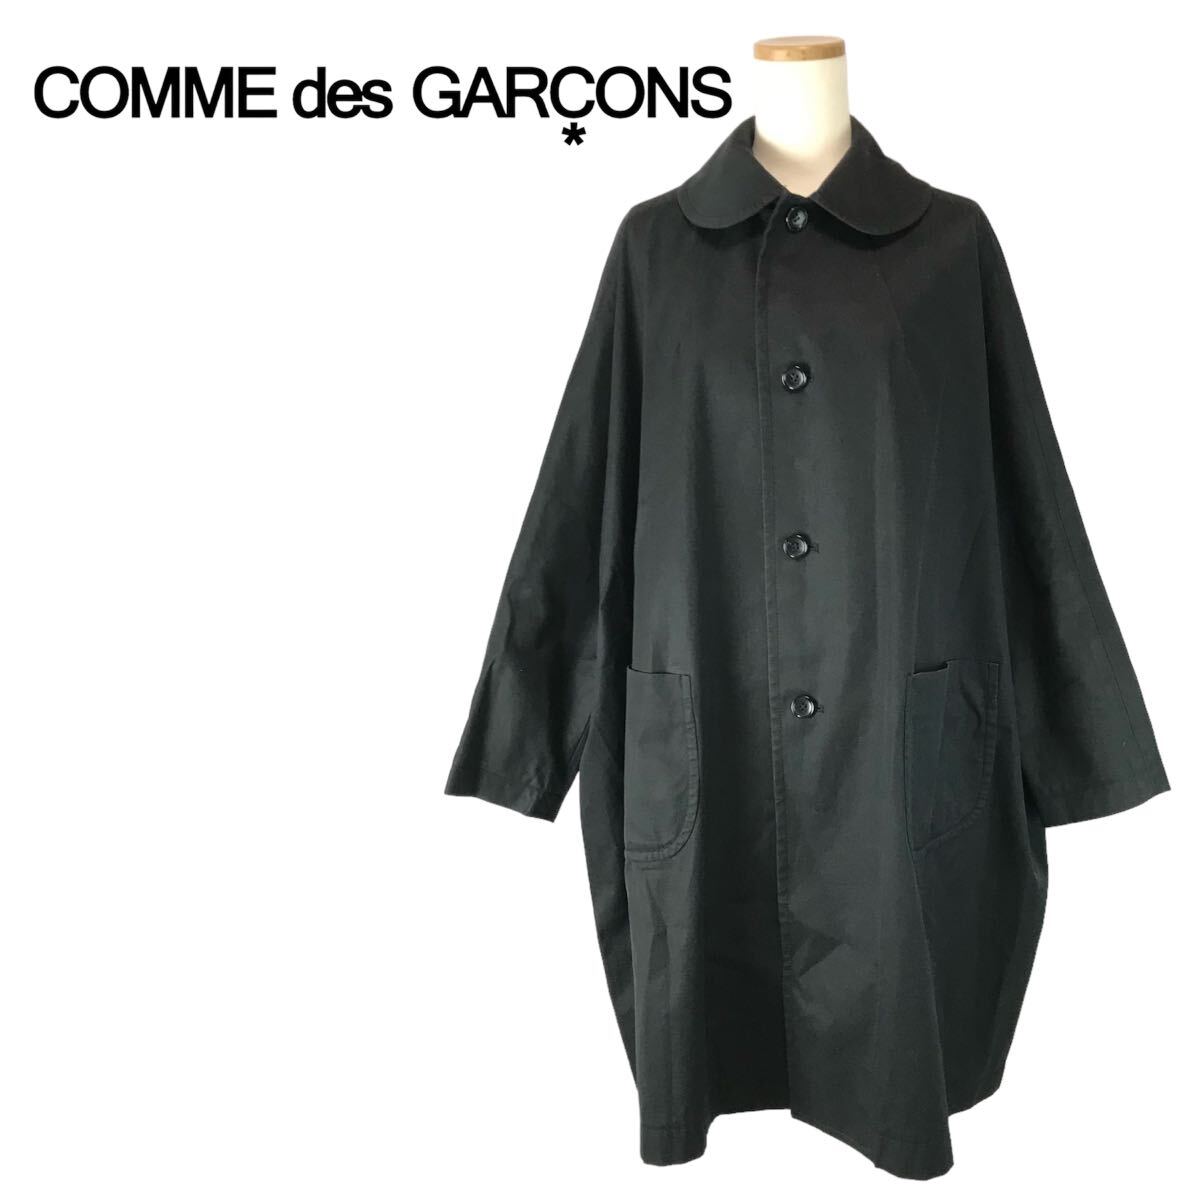 j211 コムデギャルソンCOMME des GARCONS 丸襟コットン ラグランコート 黒 S ブラック アウター ジャケット GI-C019 日本製 正規品 の画像1